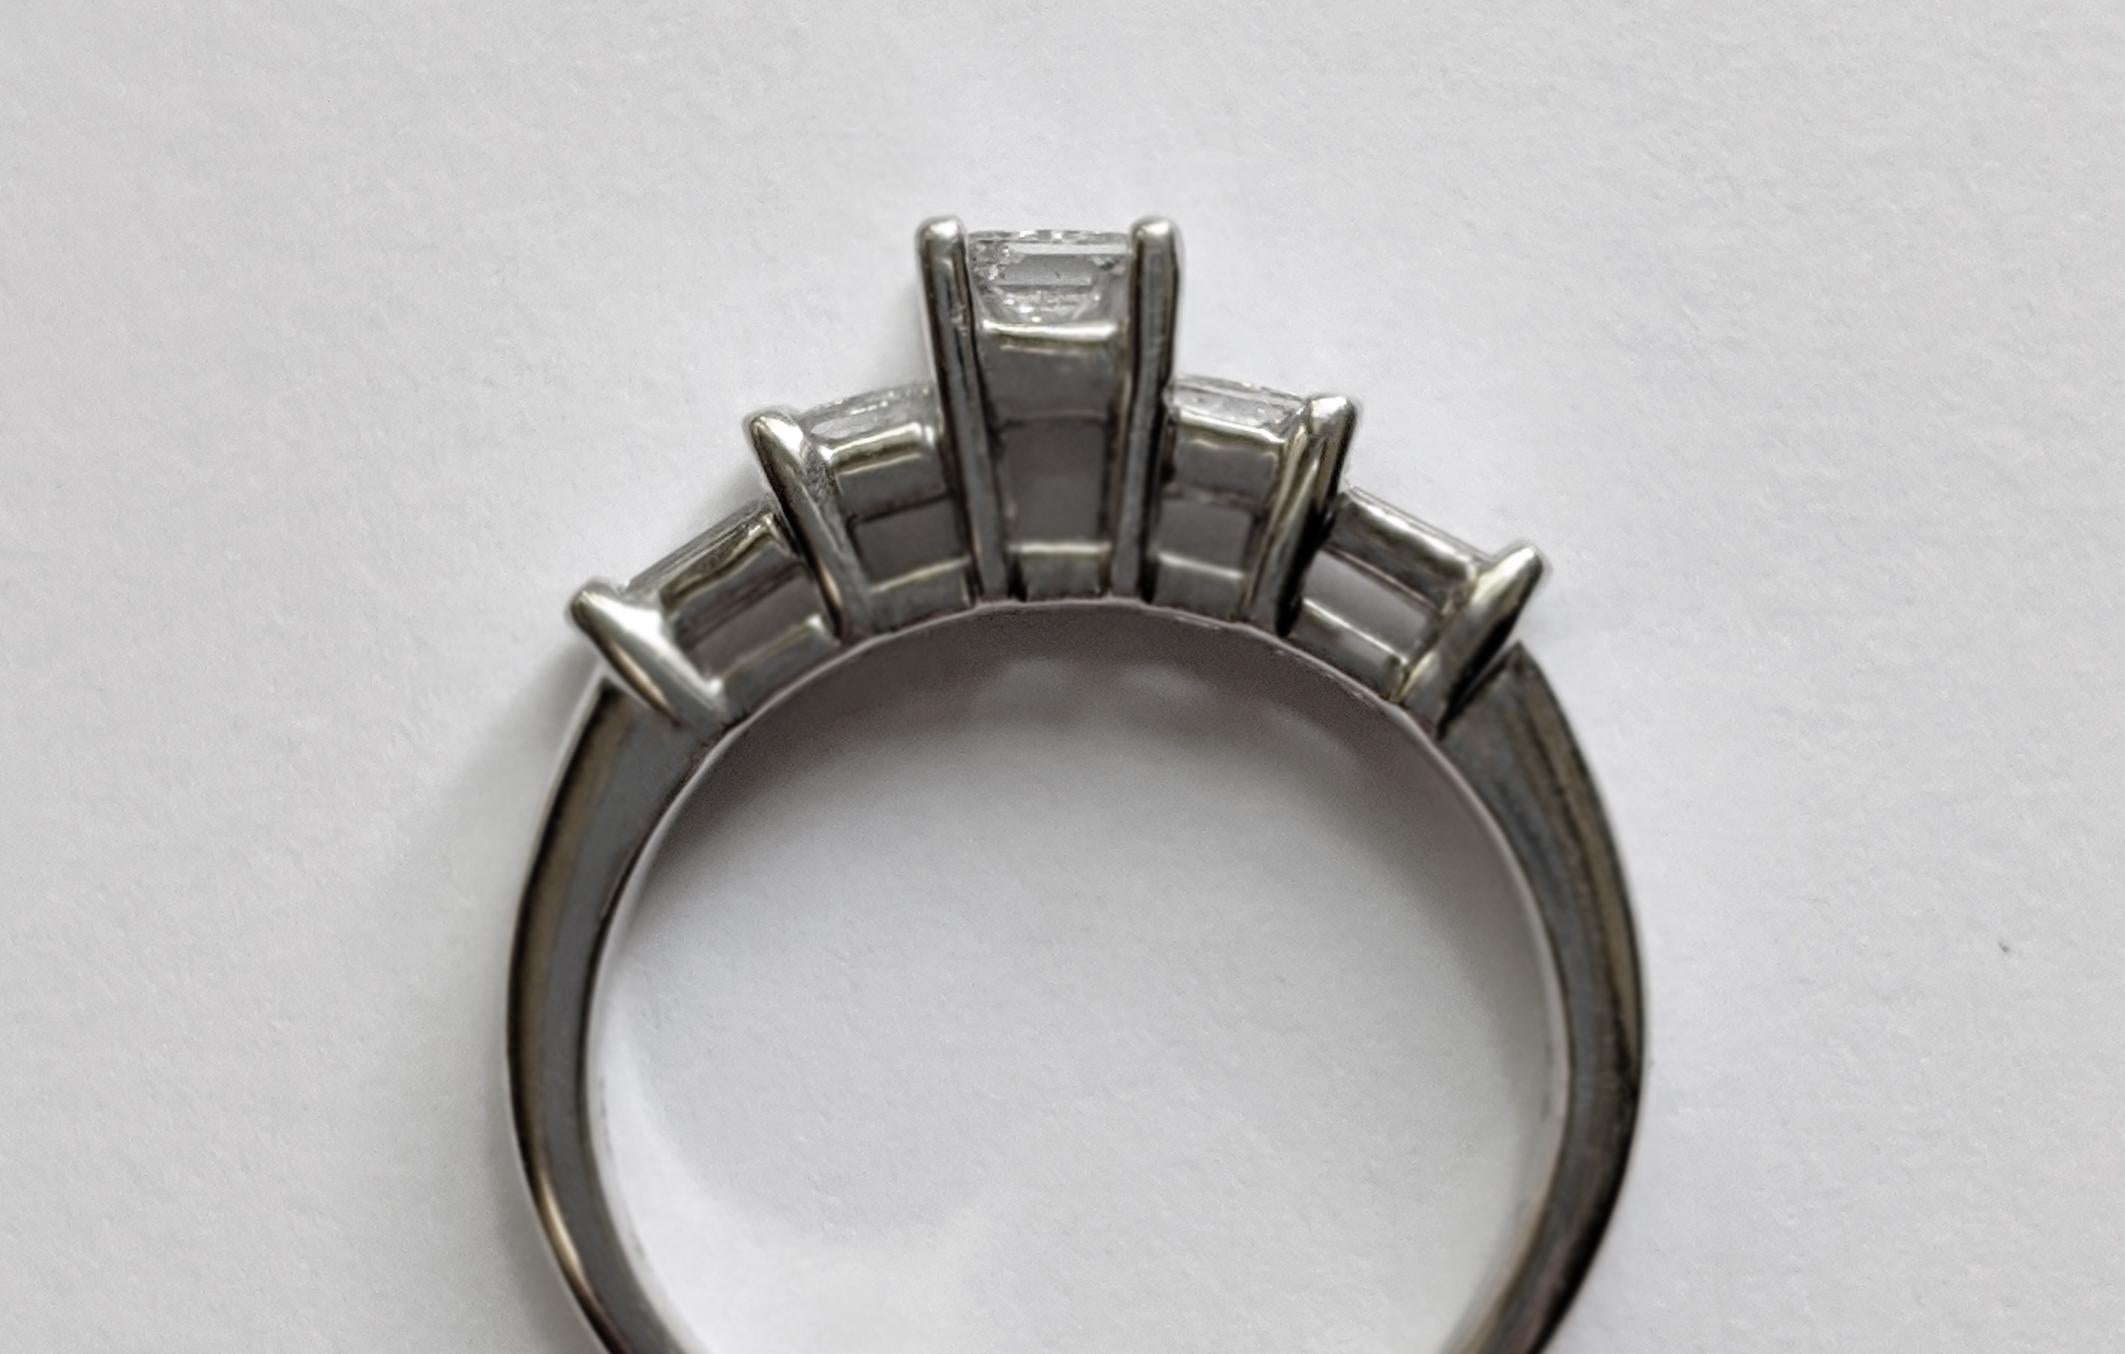 Princess Cut Princess-Cut Diamond Engagement Ring with Baguette Diamond Details For Sale